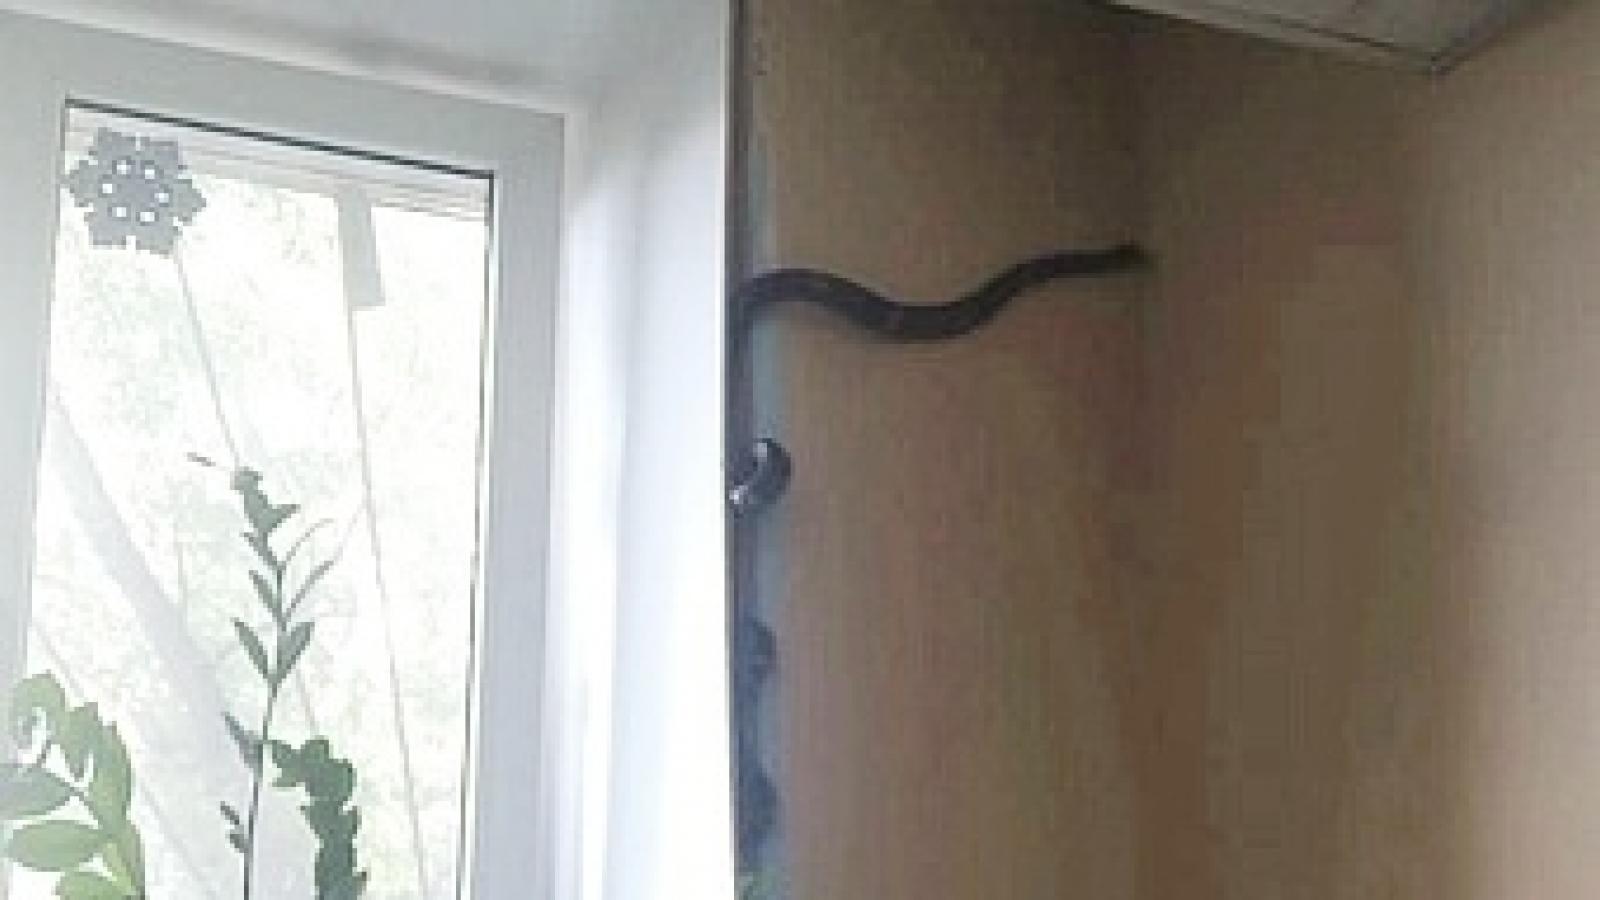 Змея забралась в вологодский офис